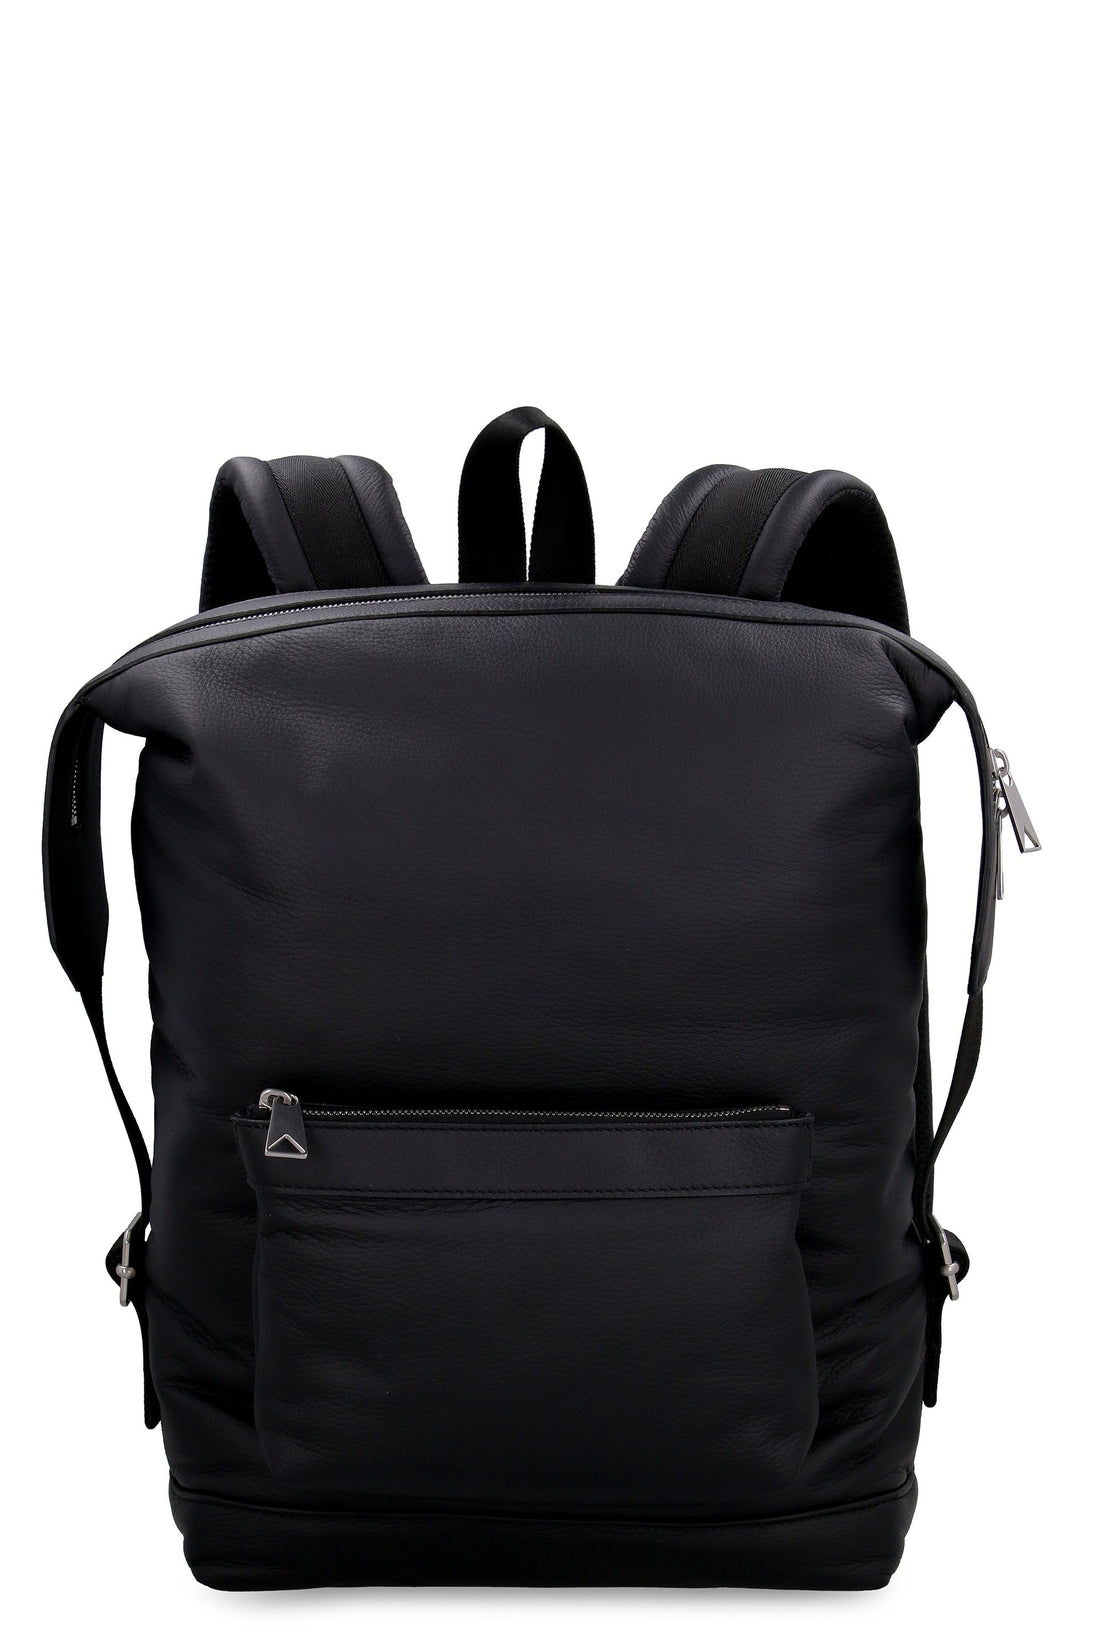 Bottega Veneta-OUTLET-SALE-Leather backpack-ARCHIVIST